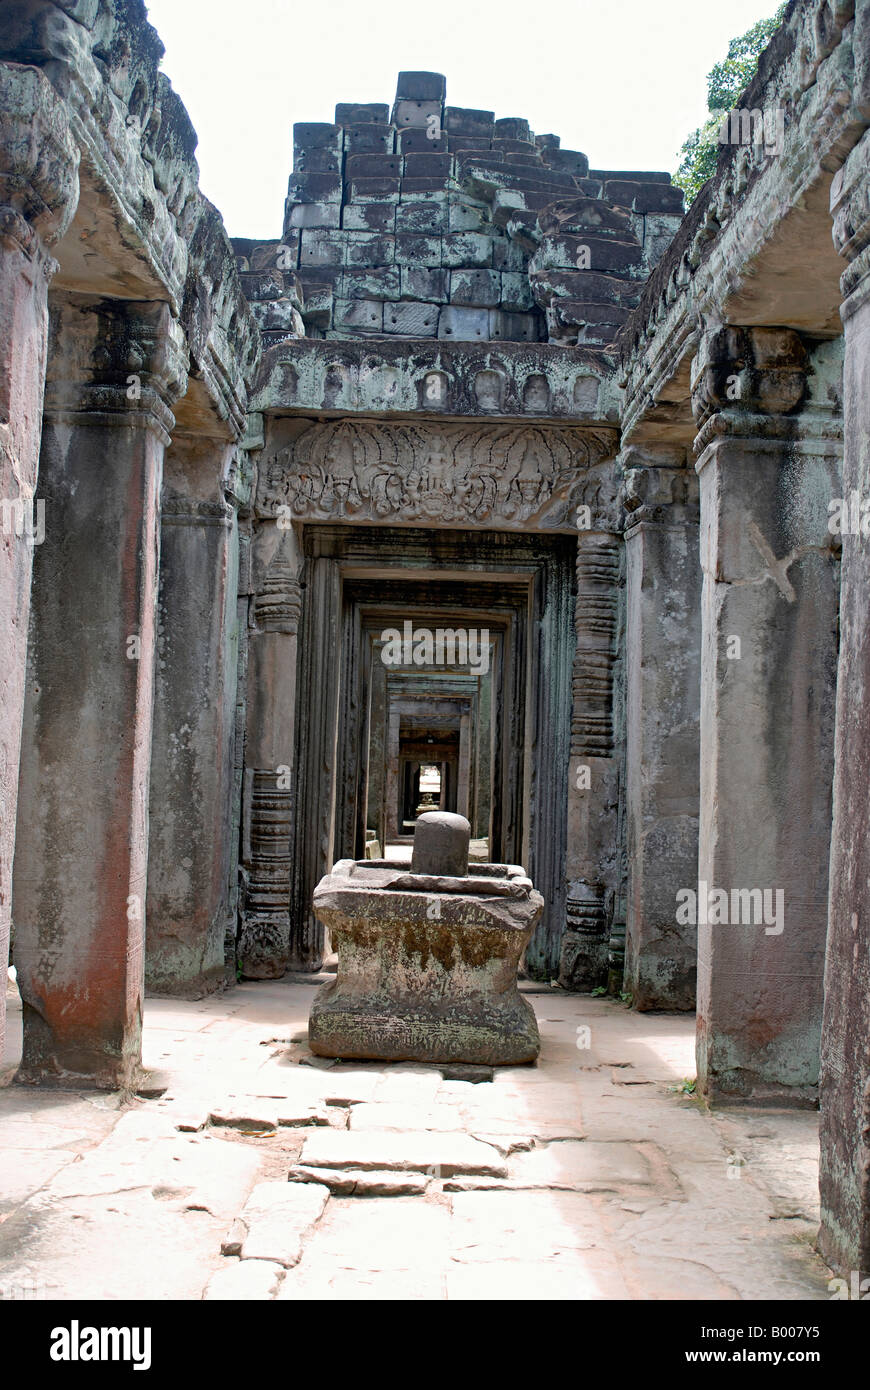 Kambodscha, Preah Khan 1191 n. Chr. Shiva Linga in der inneren Galerie. Stockfoto